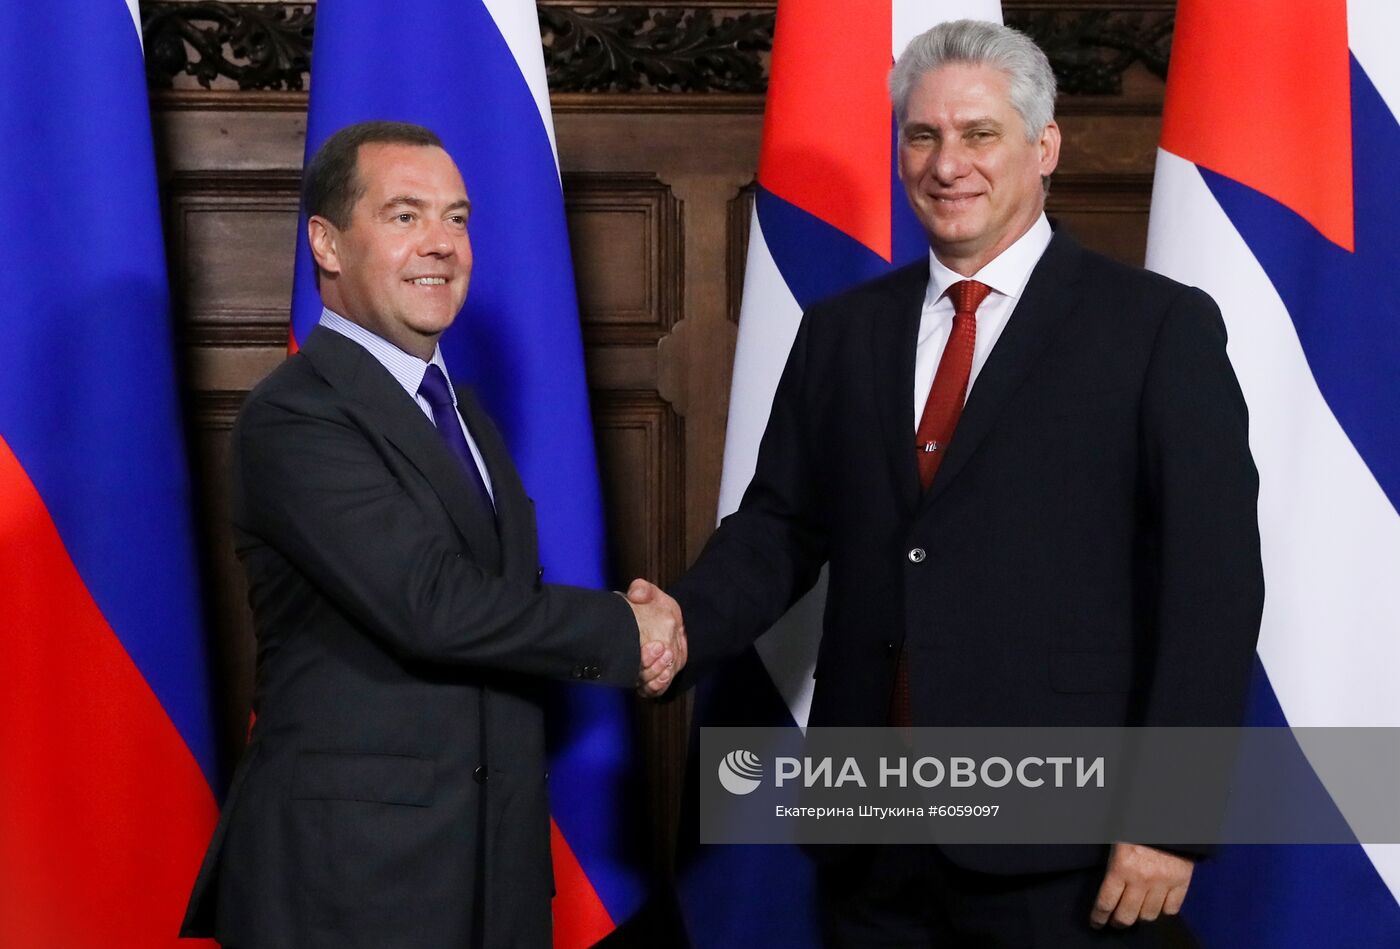 Премьер-министр РФ Д. Медведев встретился с президентом Кубы Мигелем Диас-Канелем Бермудесом